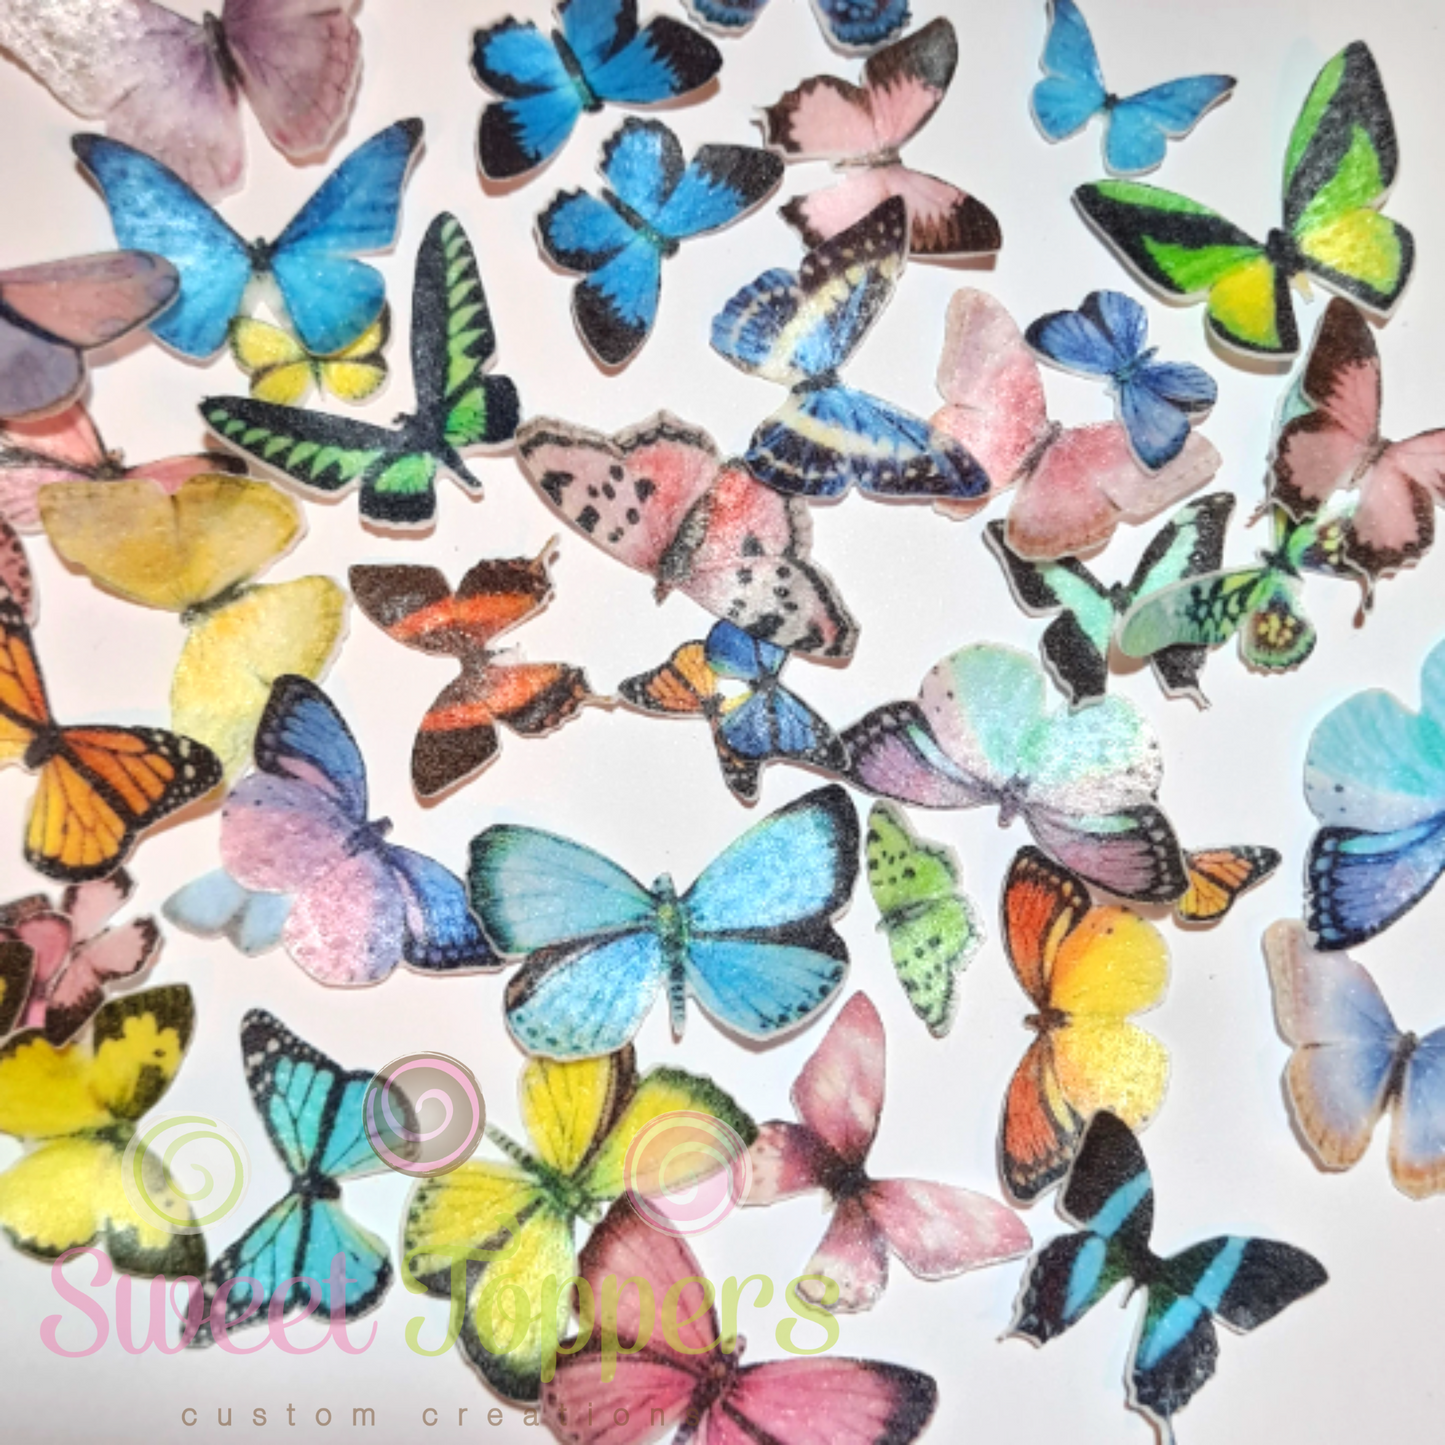 Wafer Butterfly - Pre-cut Rainbow Butterfly